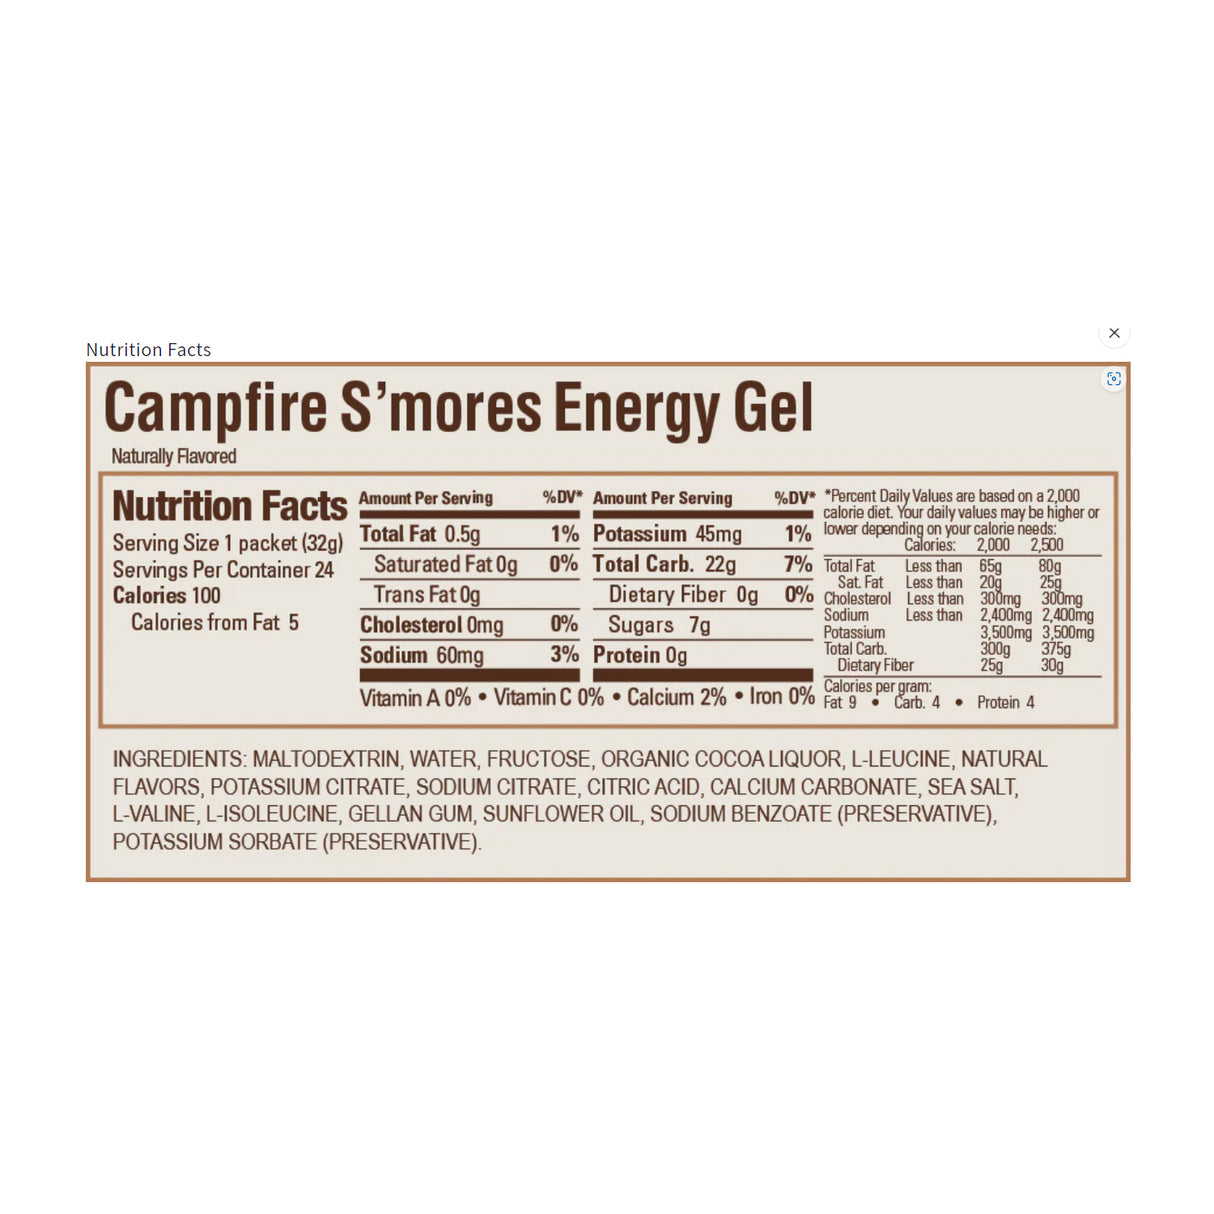 GU Original Energy Gel Campfire S'Mores (24 x 32g)